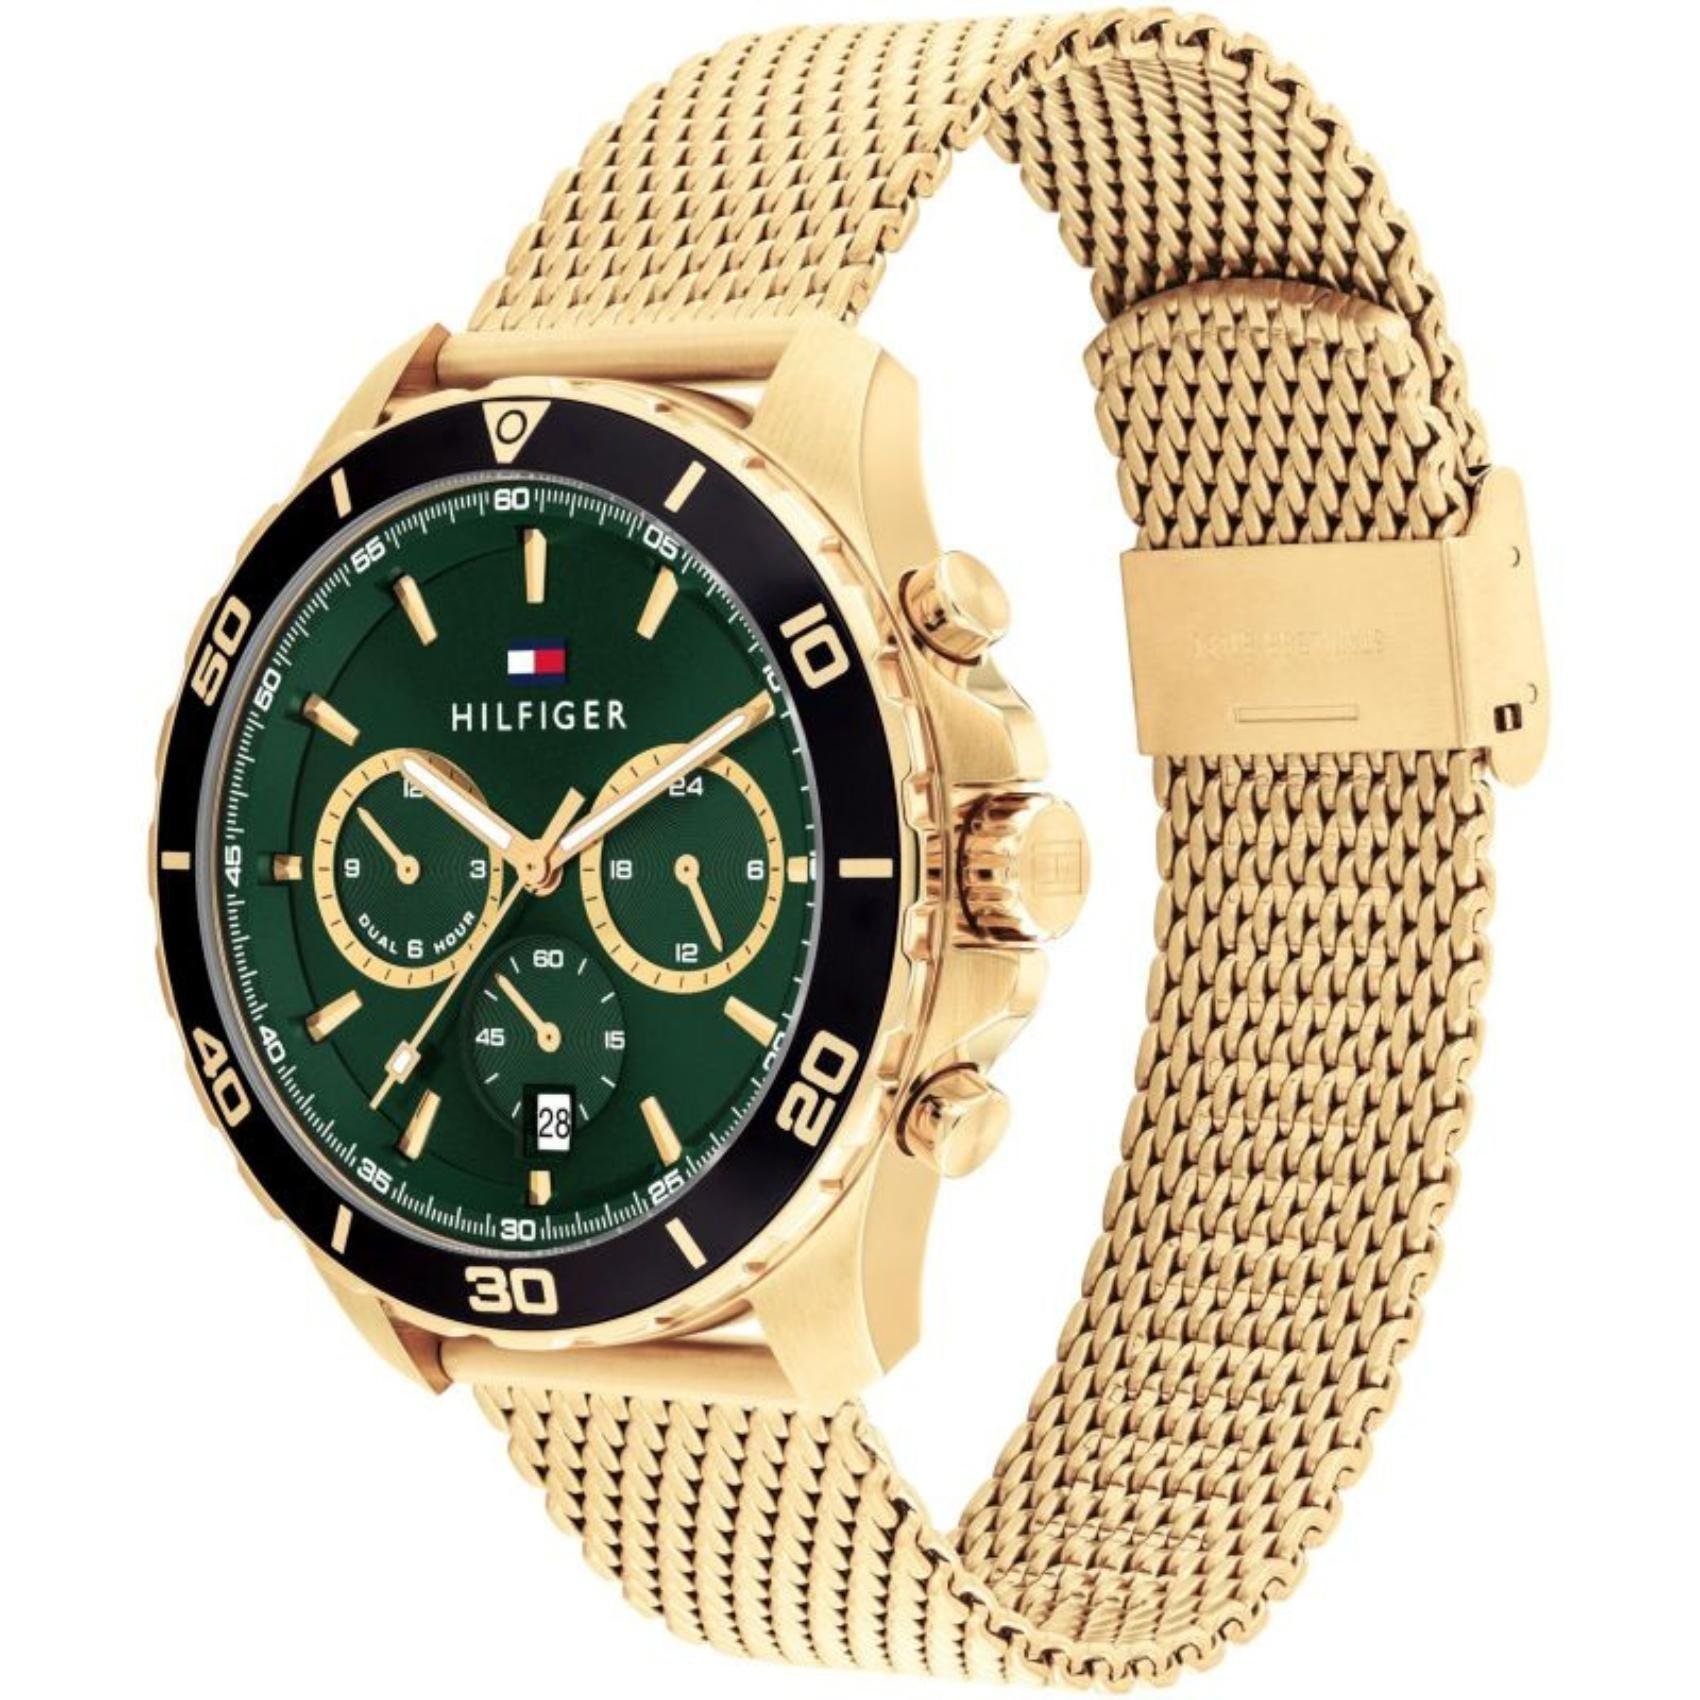 Ανδρικό ρολόι Tommy Hilfiger Jordan 1792093 με χρυσό ατσάλινο μπρασελέ και πράσινο καντράν διαμέτρου 43mm.